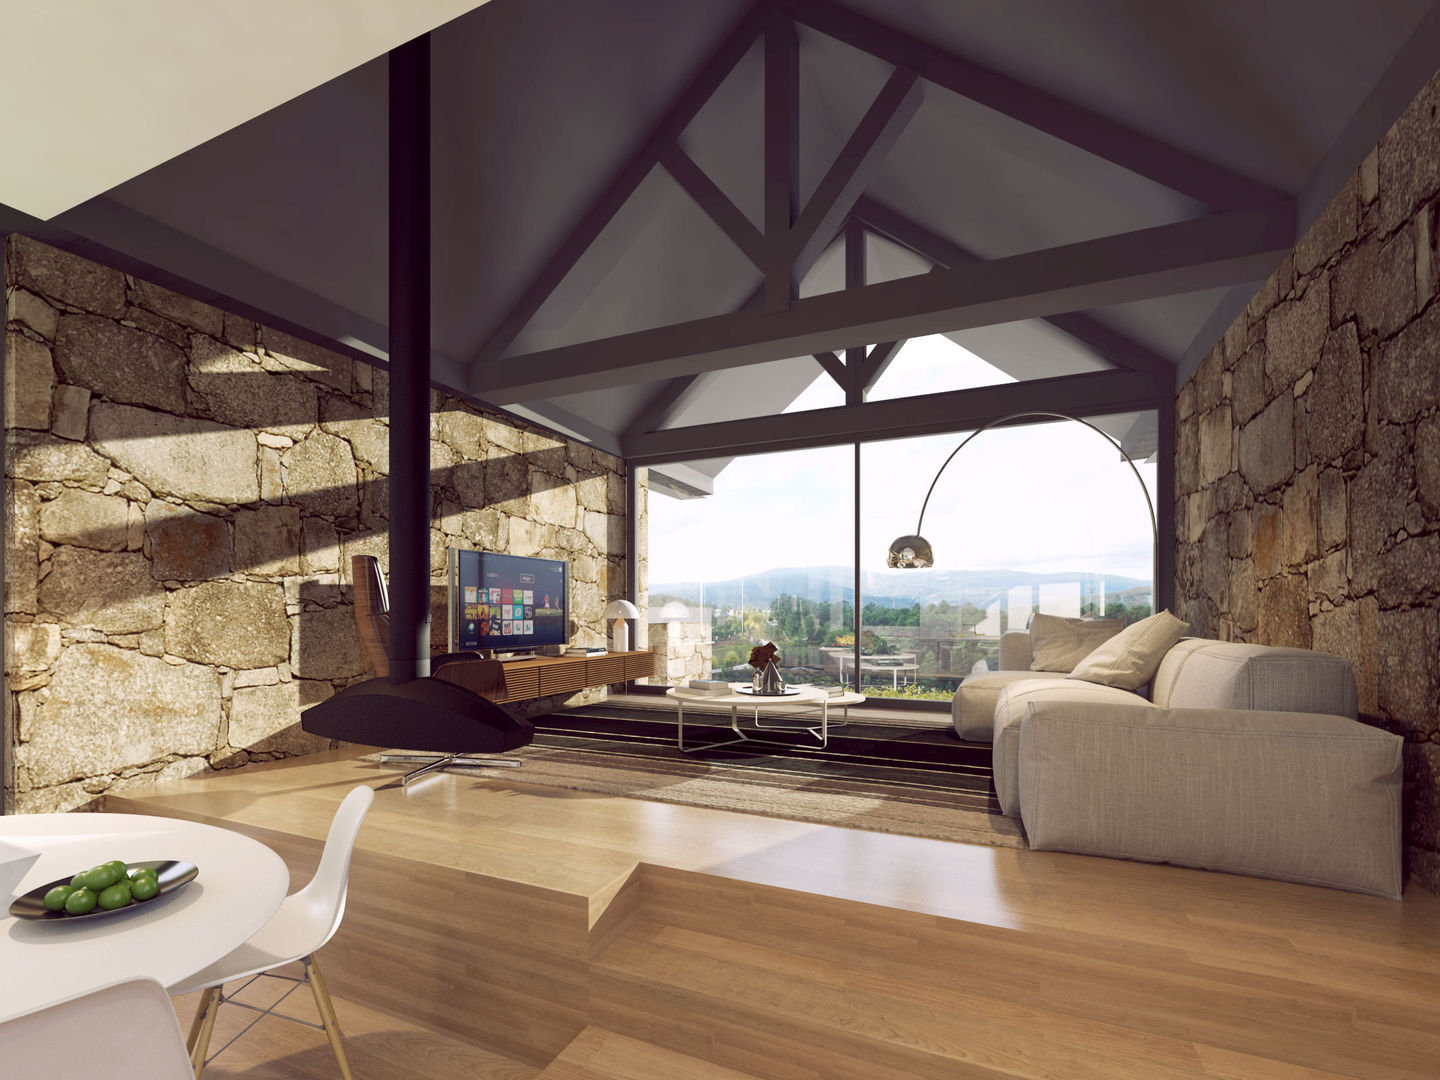 imagem 3d - sala de estar Davide Domingues Arquitecto Salas de estar rústicas